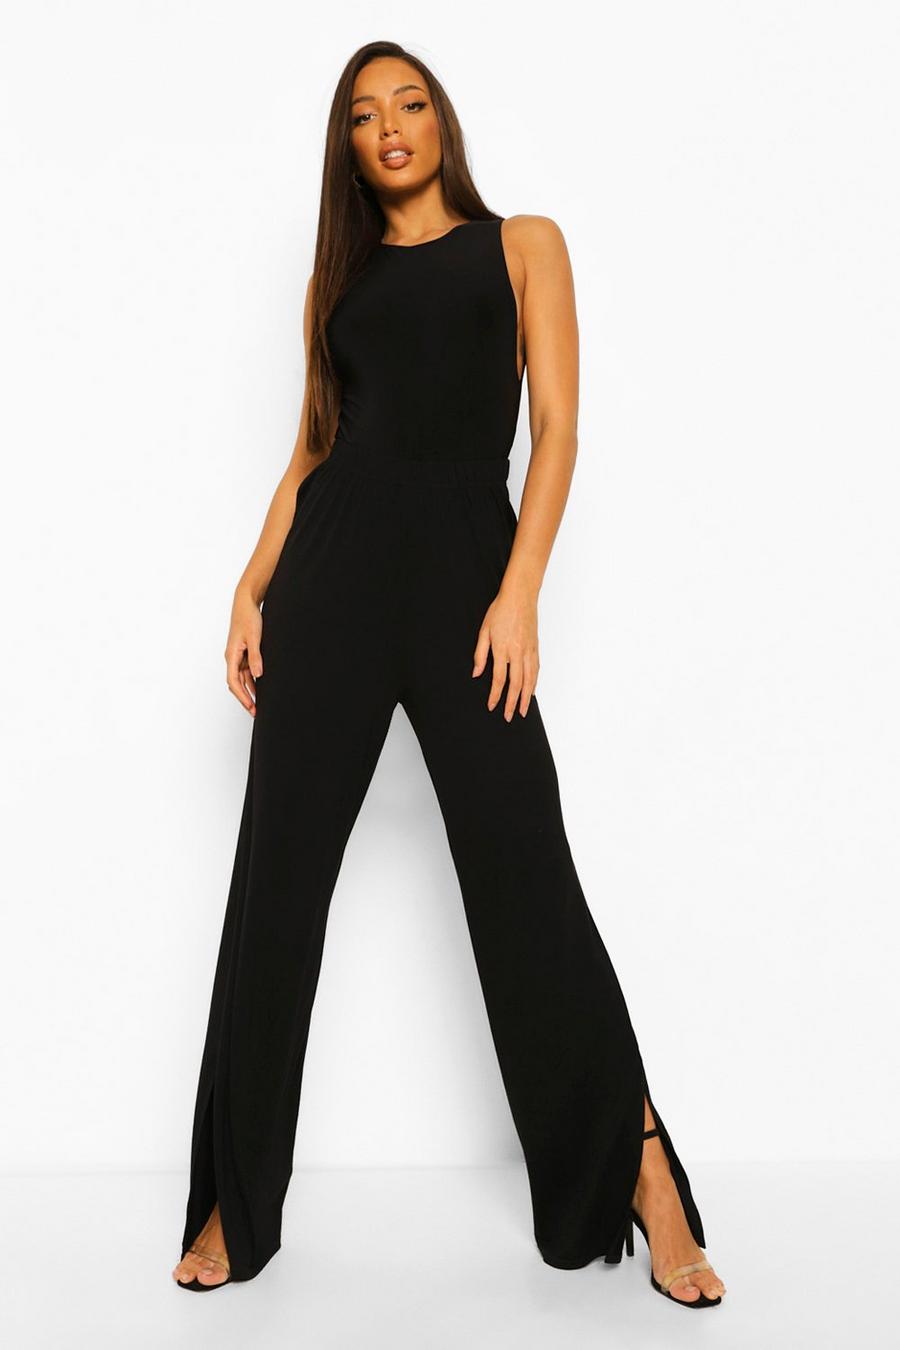 שחור מכנסי ג'רסי עם מכפלת שסועה ובגזרה רחבה, לנשים גבוהות image number 1